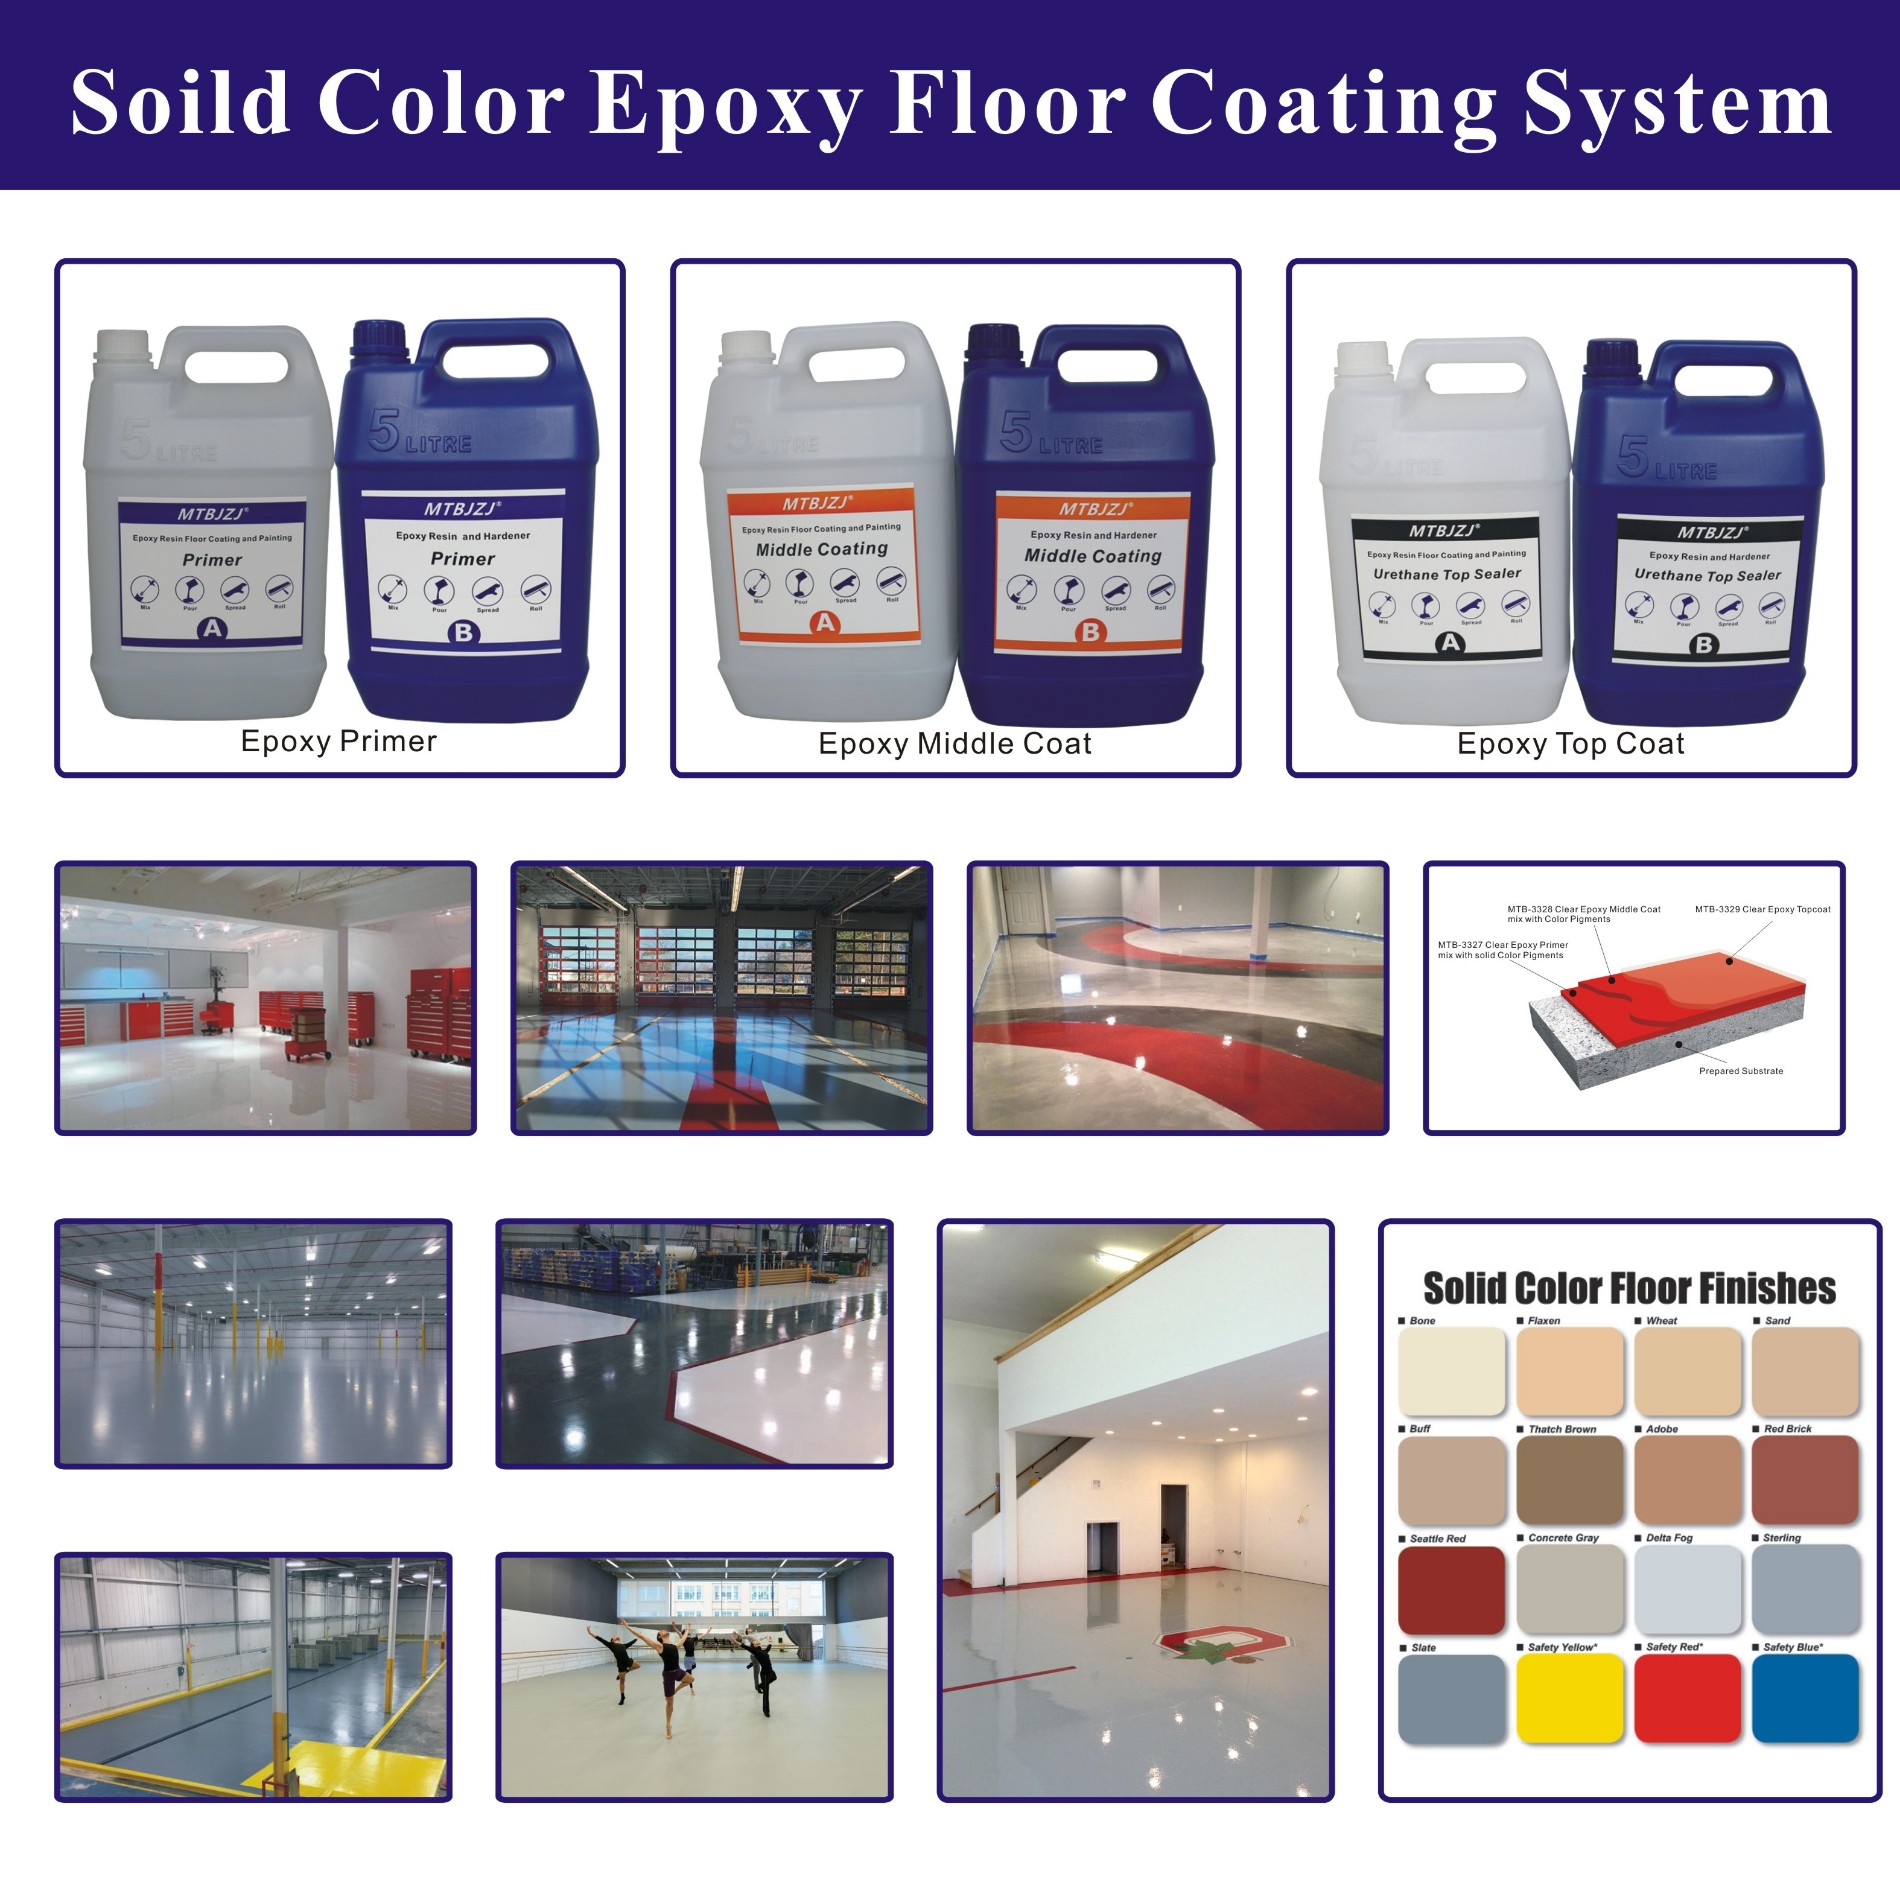 खरीदने के लिए ठोस रंग epoxy प्रणाली के लिए फैक्टरी पार्किंग,ठोस रंग epoxy प्रणाली के लिए फैक्टरी पार्किंग दाम,ठोस रंग epoxy प्रणाली के लिए फैक्टरी पार्किंग ब्रांड,ठोस रंग epoxy प्रणाली के लिए फैक्टरी पार्किंग मैन्युफैक्चरर्स,ठोस रंग epoxy प्रणाली के लिए फैक्टरी पार्किंग उद्धृत मूल्य,ठोस रंग epoxy प्रणाली के लिए फैक्टरी पार्किंग कंपनी,